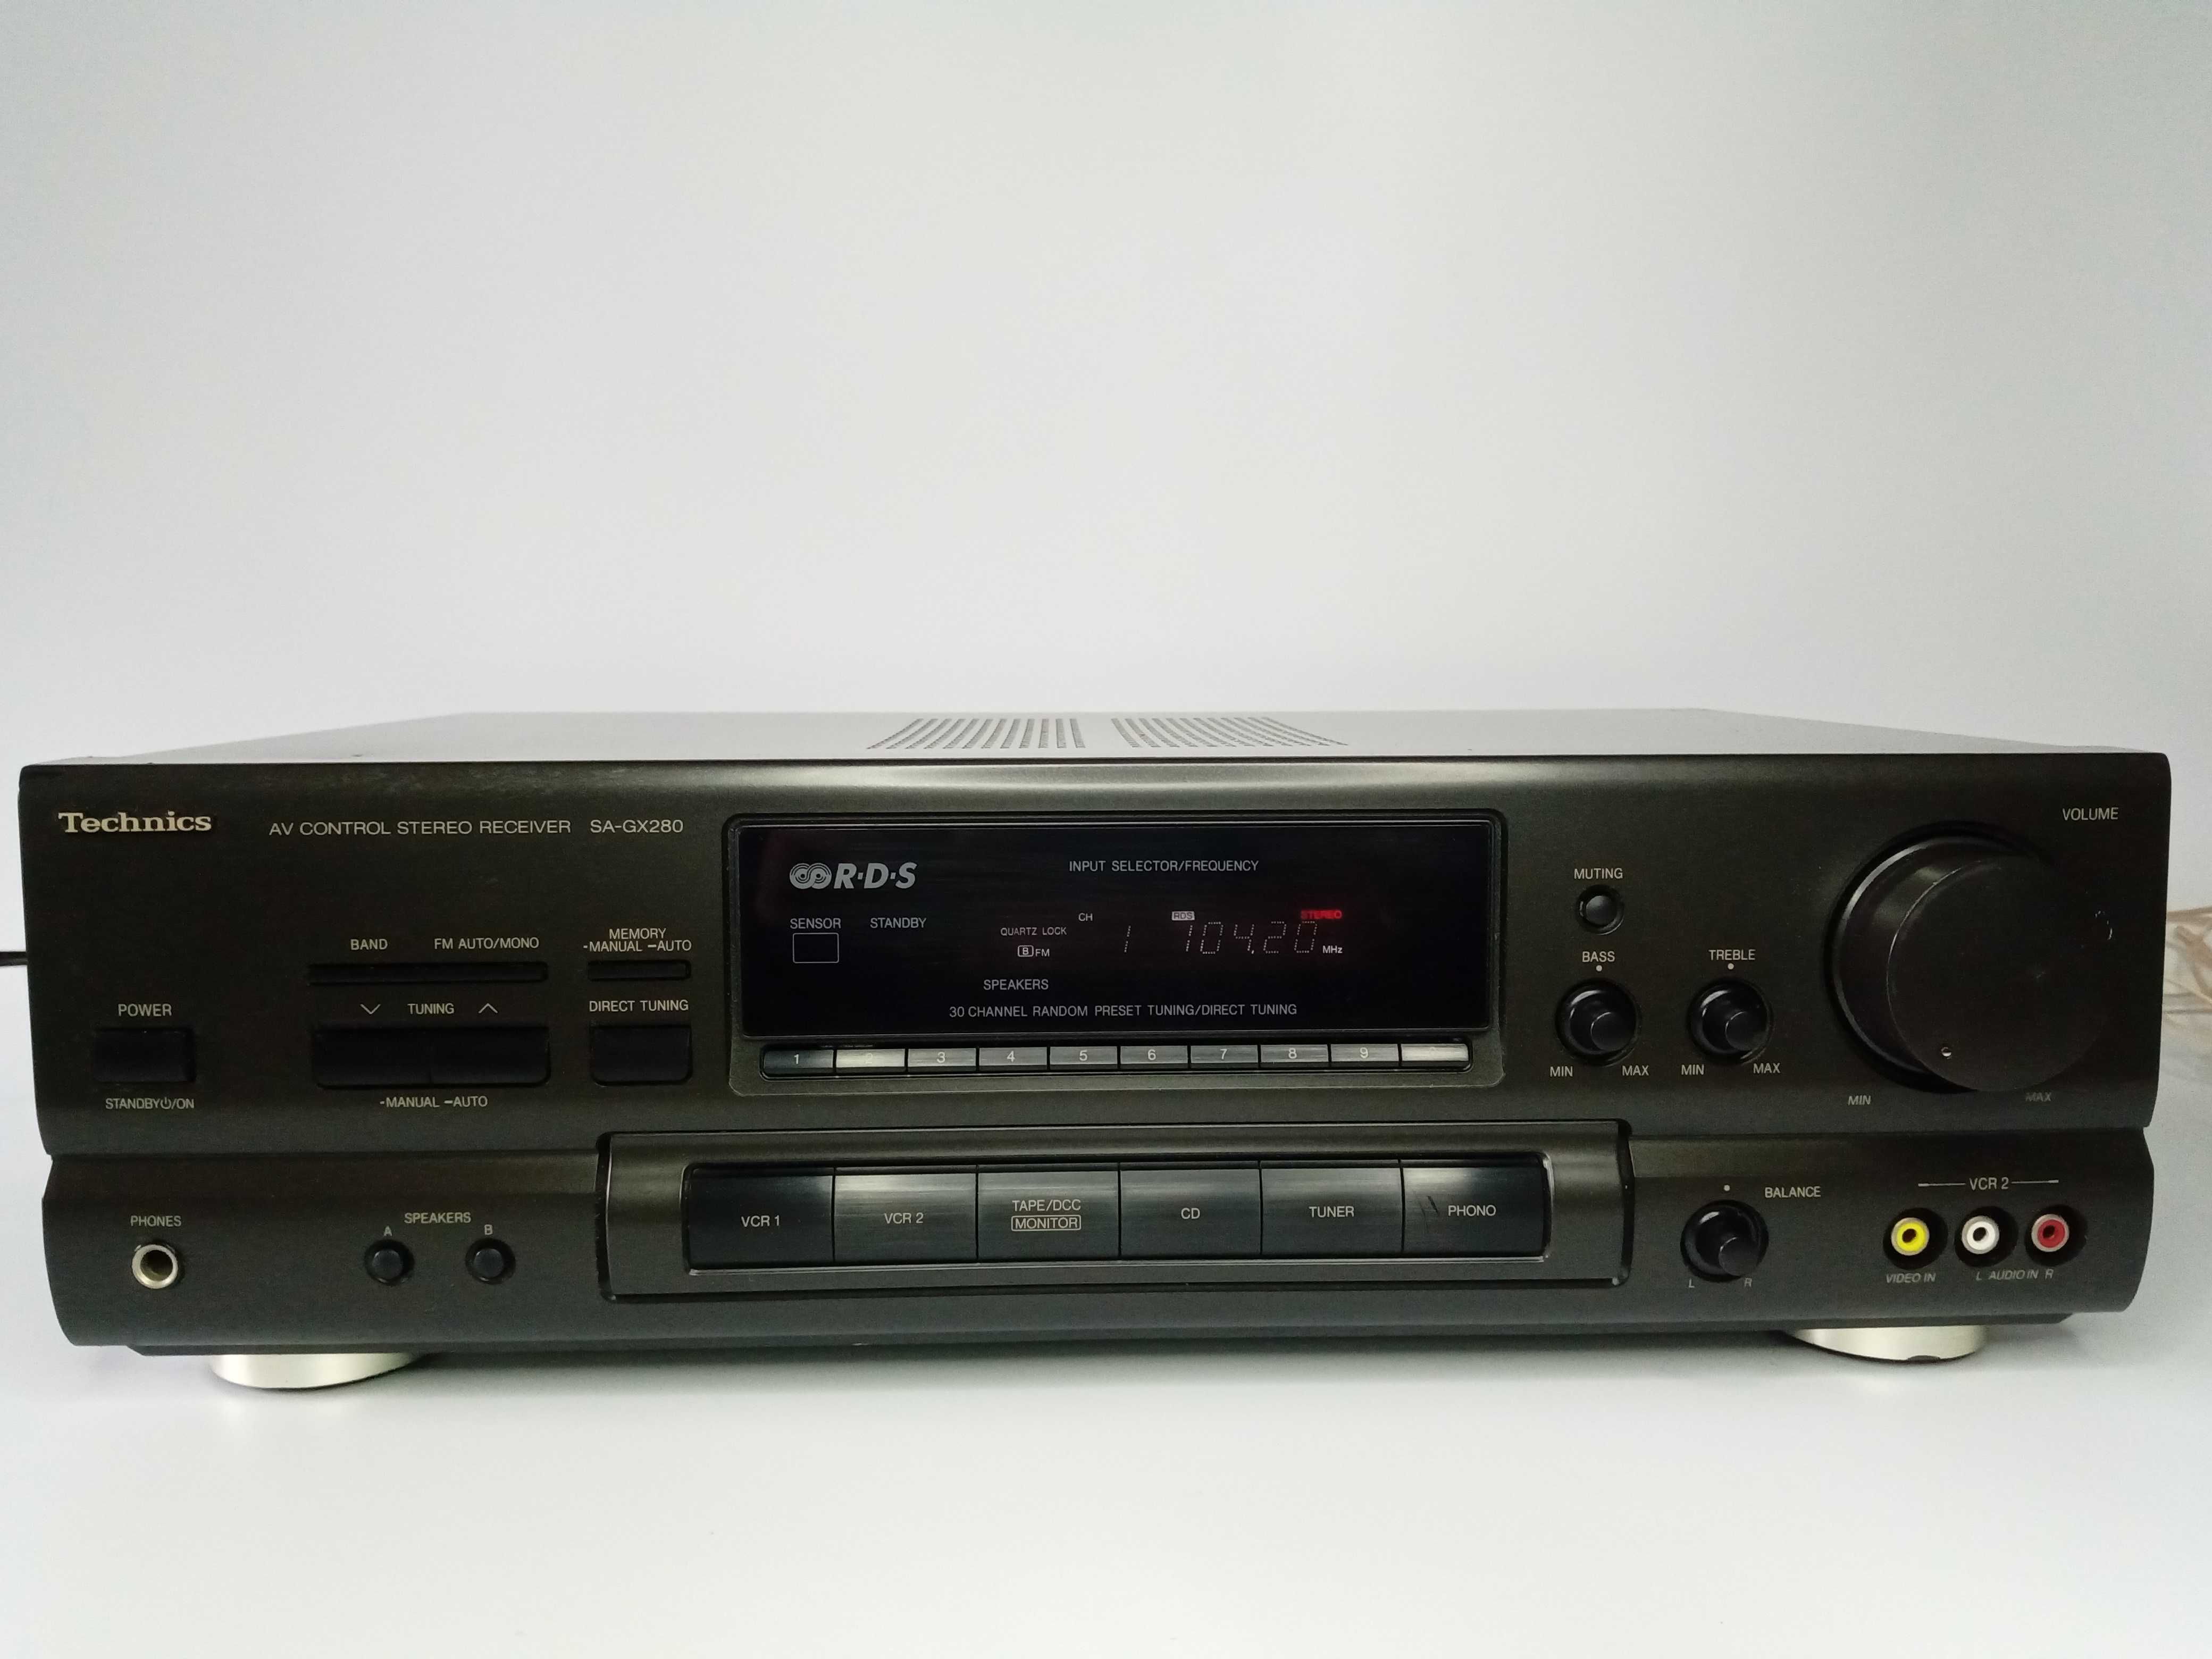 Amplituner Technics SA-GX280 stereo